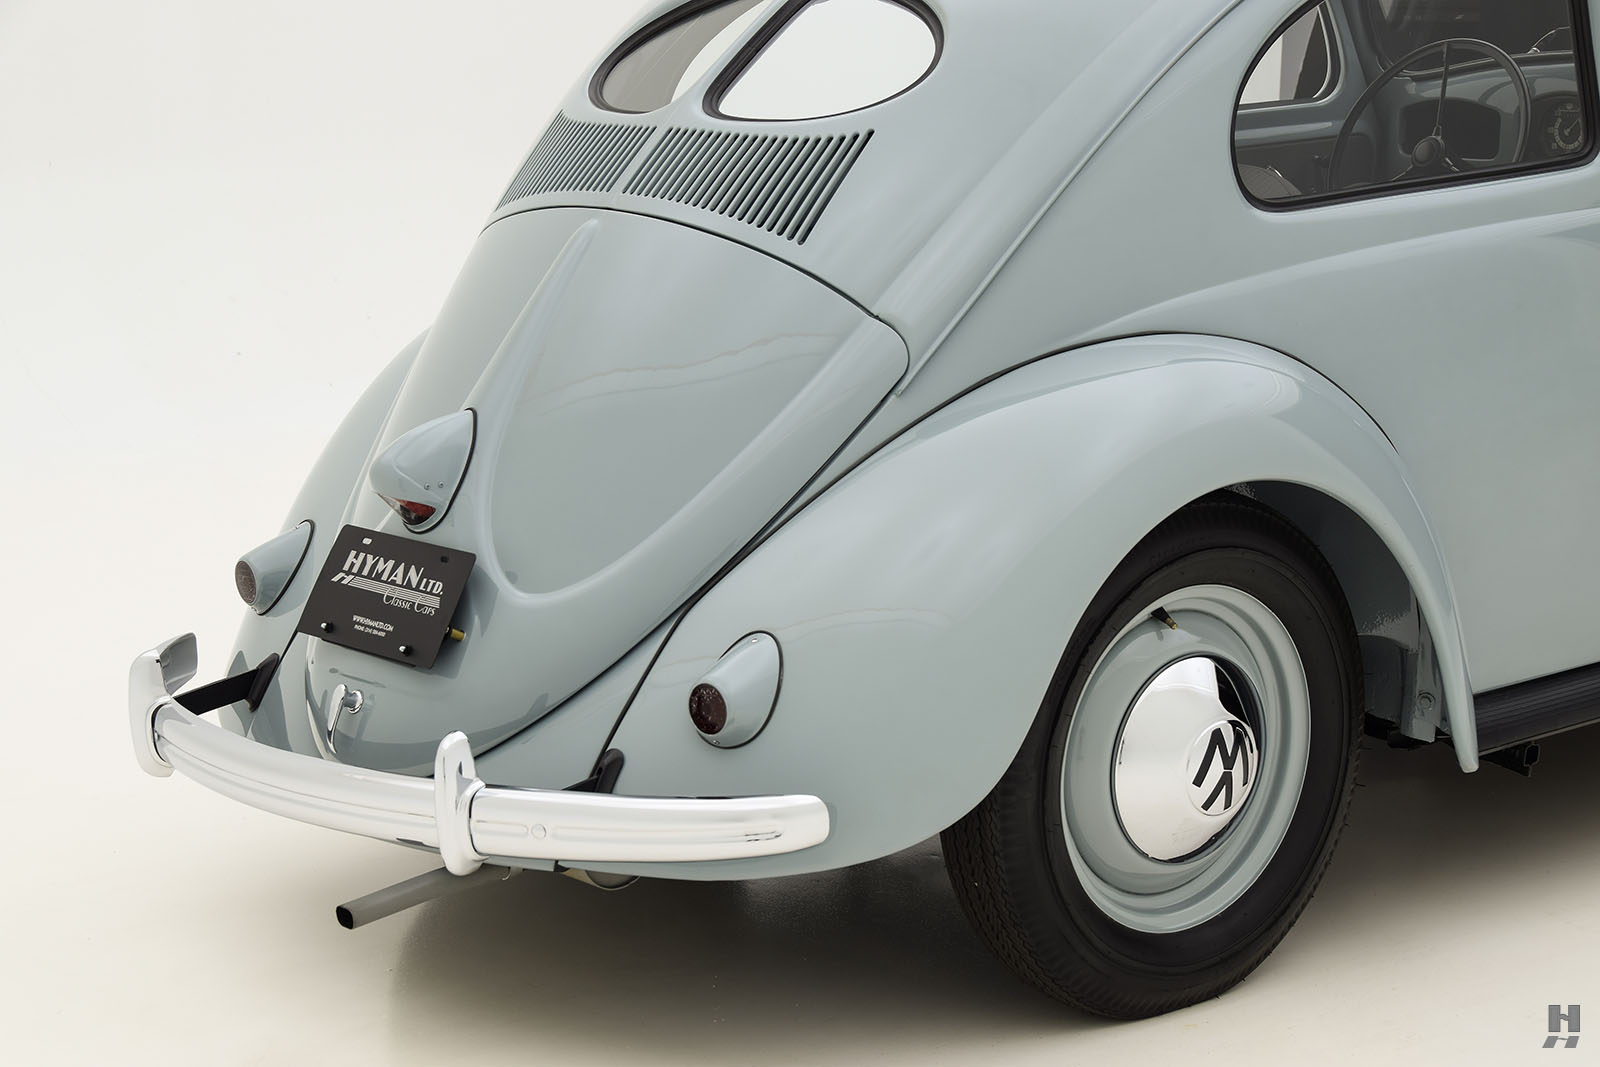 1963 volkswagen beetle